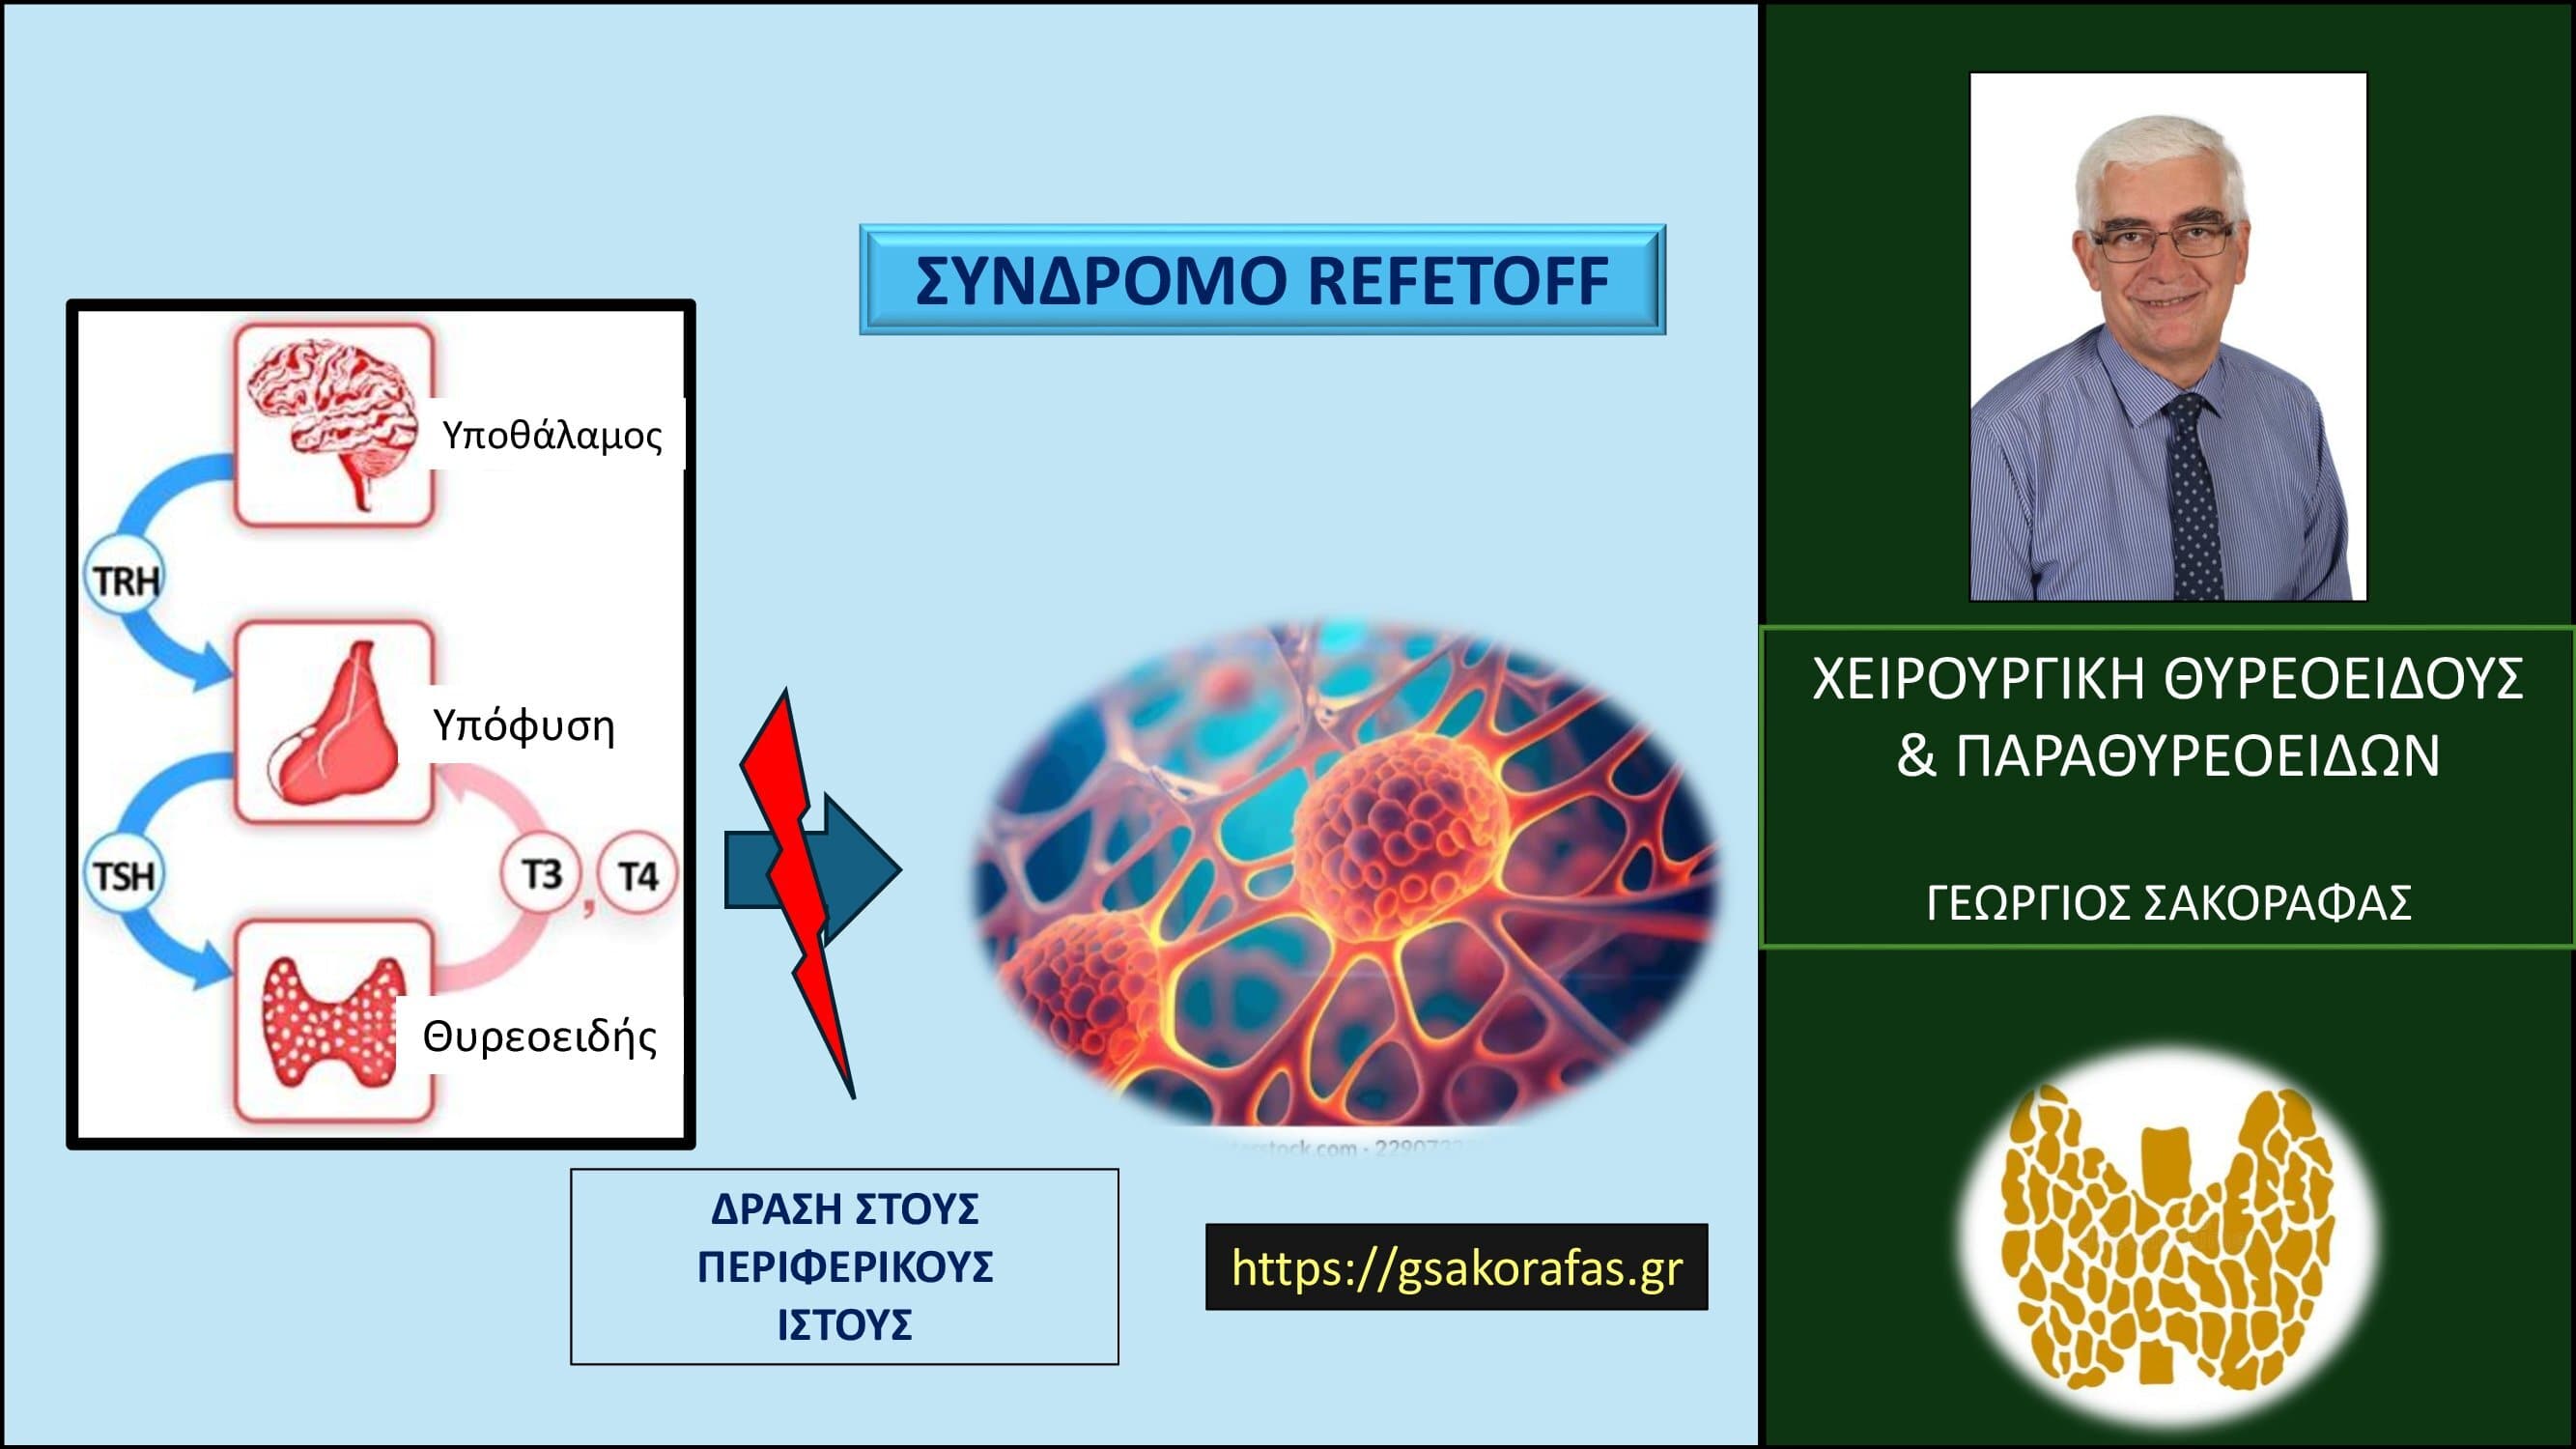 Θυρεοειδής και σύνδρομο Refetoff (Σύνδρομο αντίστασης στις θυρεοειδικές ορμόνες )